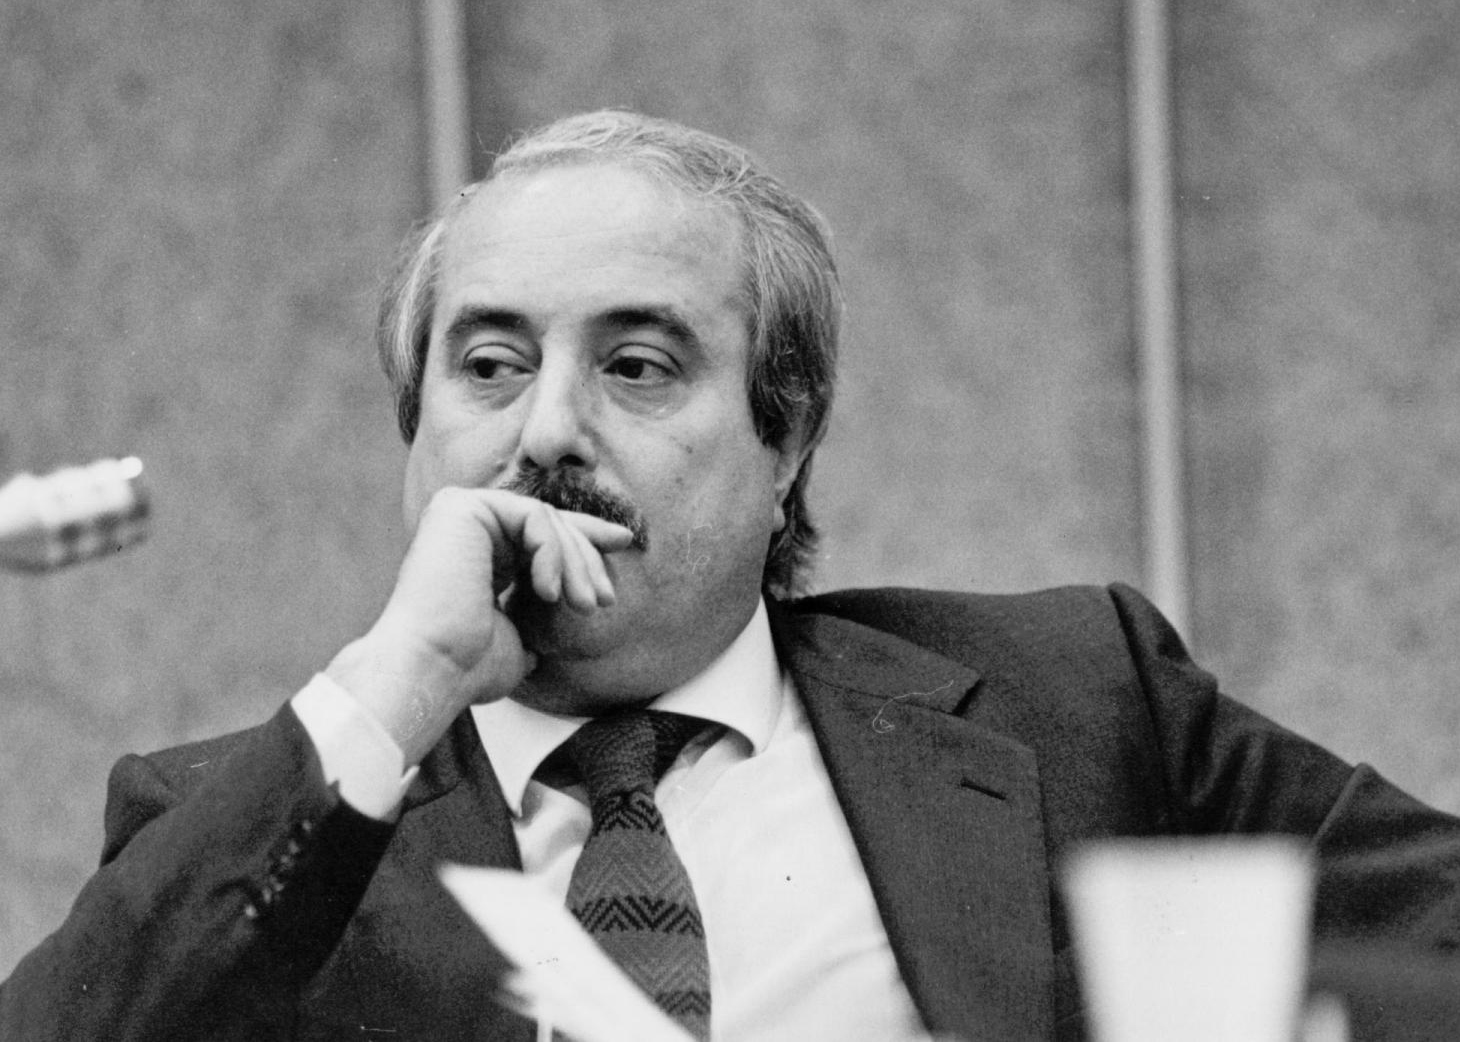 Italia l-a omagiat pe celebrul judecător Falcone, asasinat de mafie în urmă cu 30 de ani